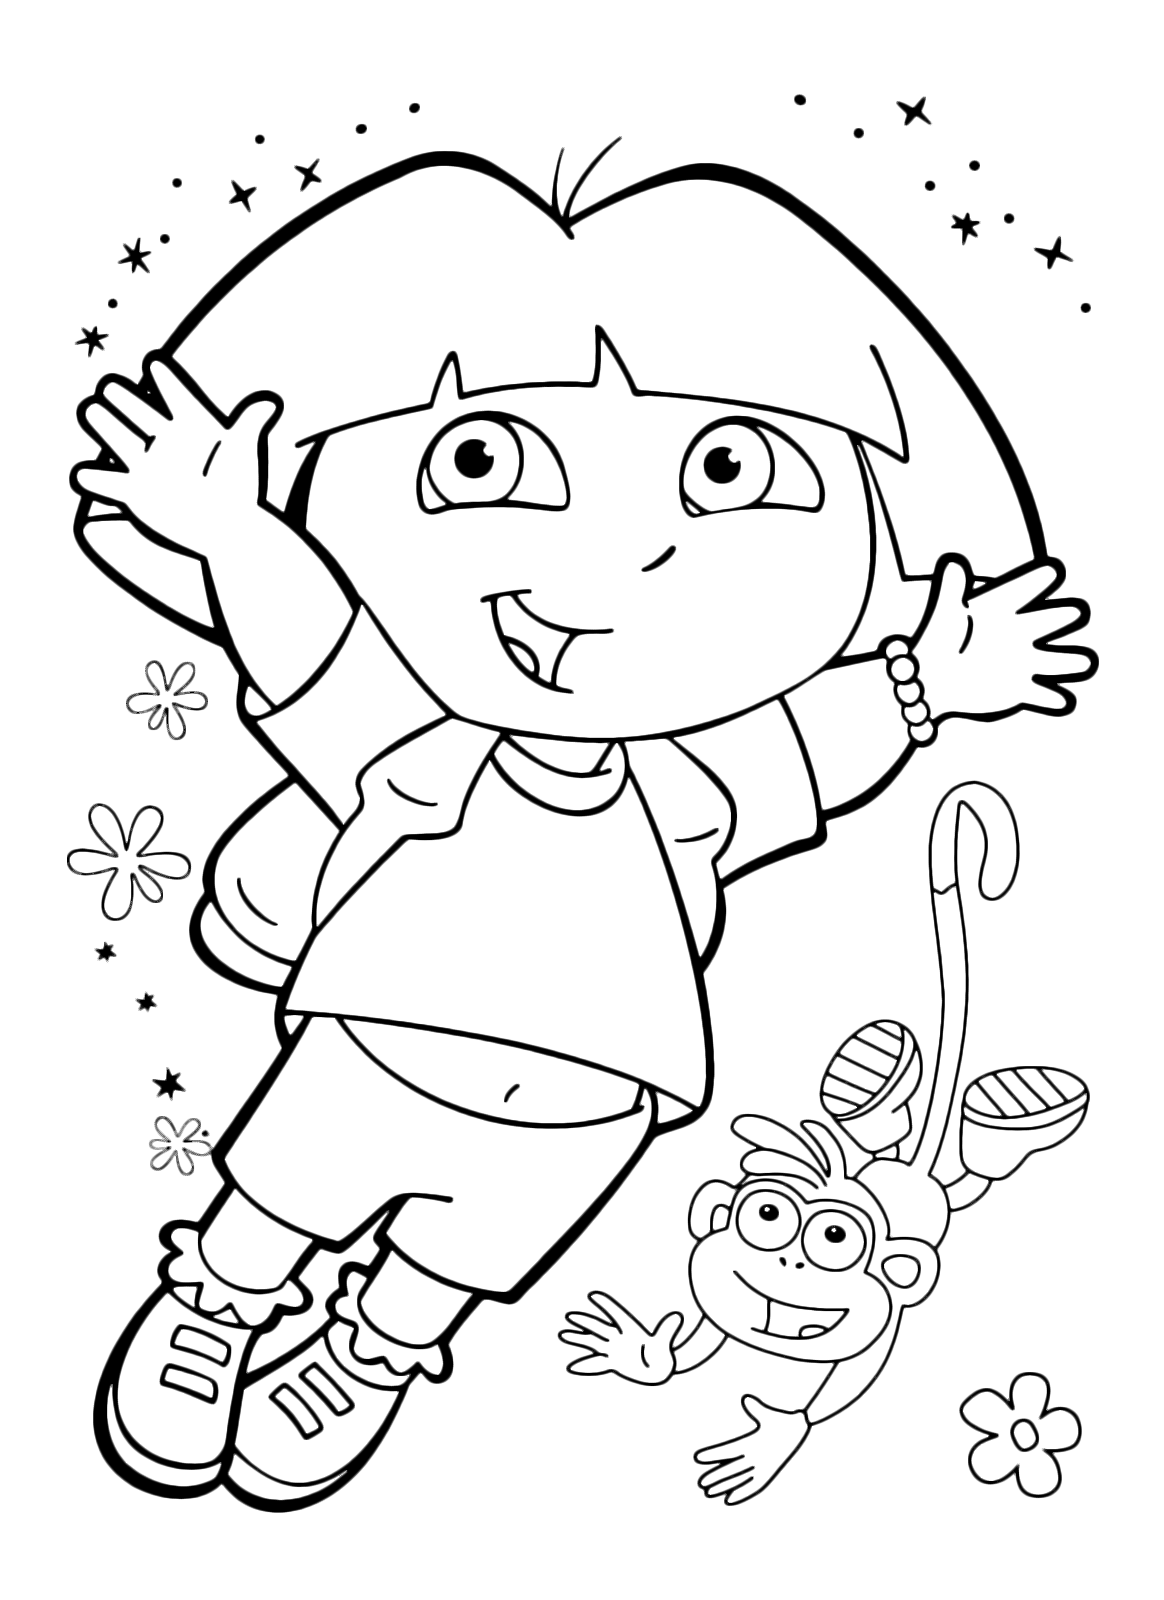 Dora l'esploratrice - Dora salta con la scimmietta Boots